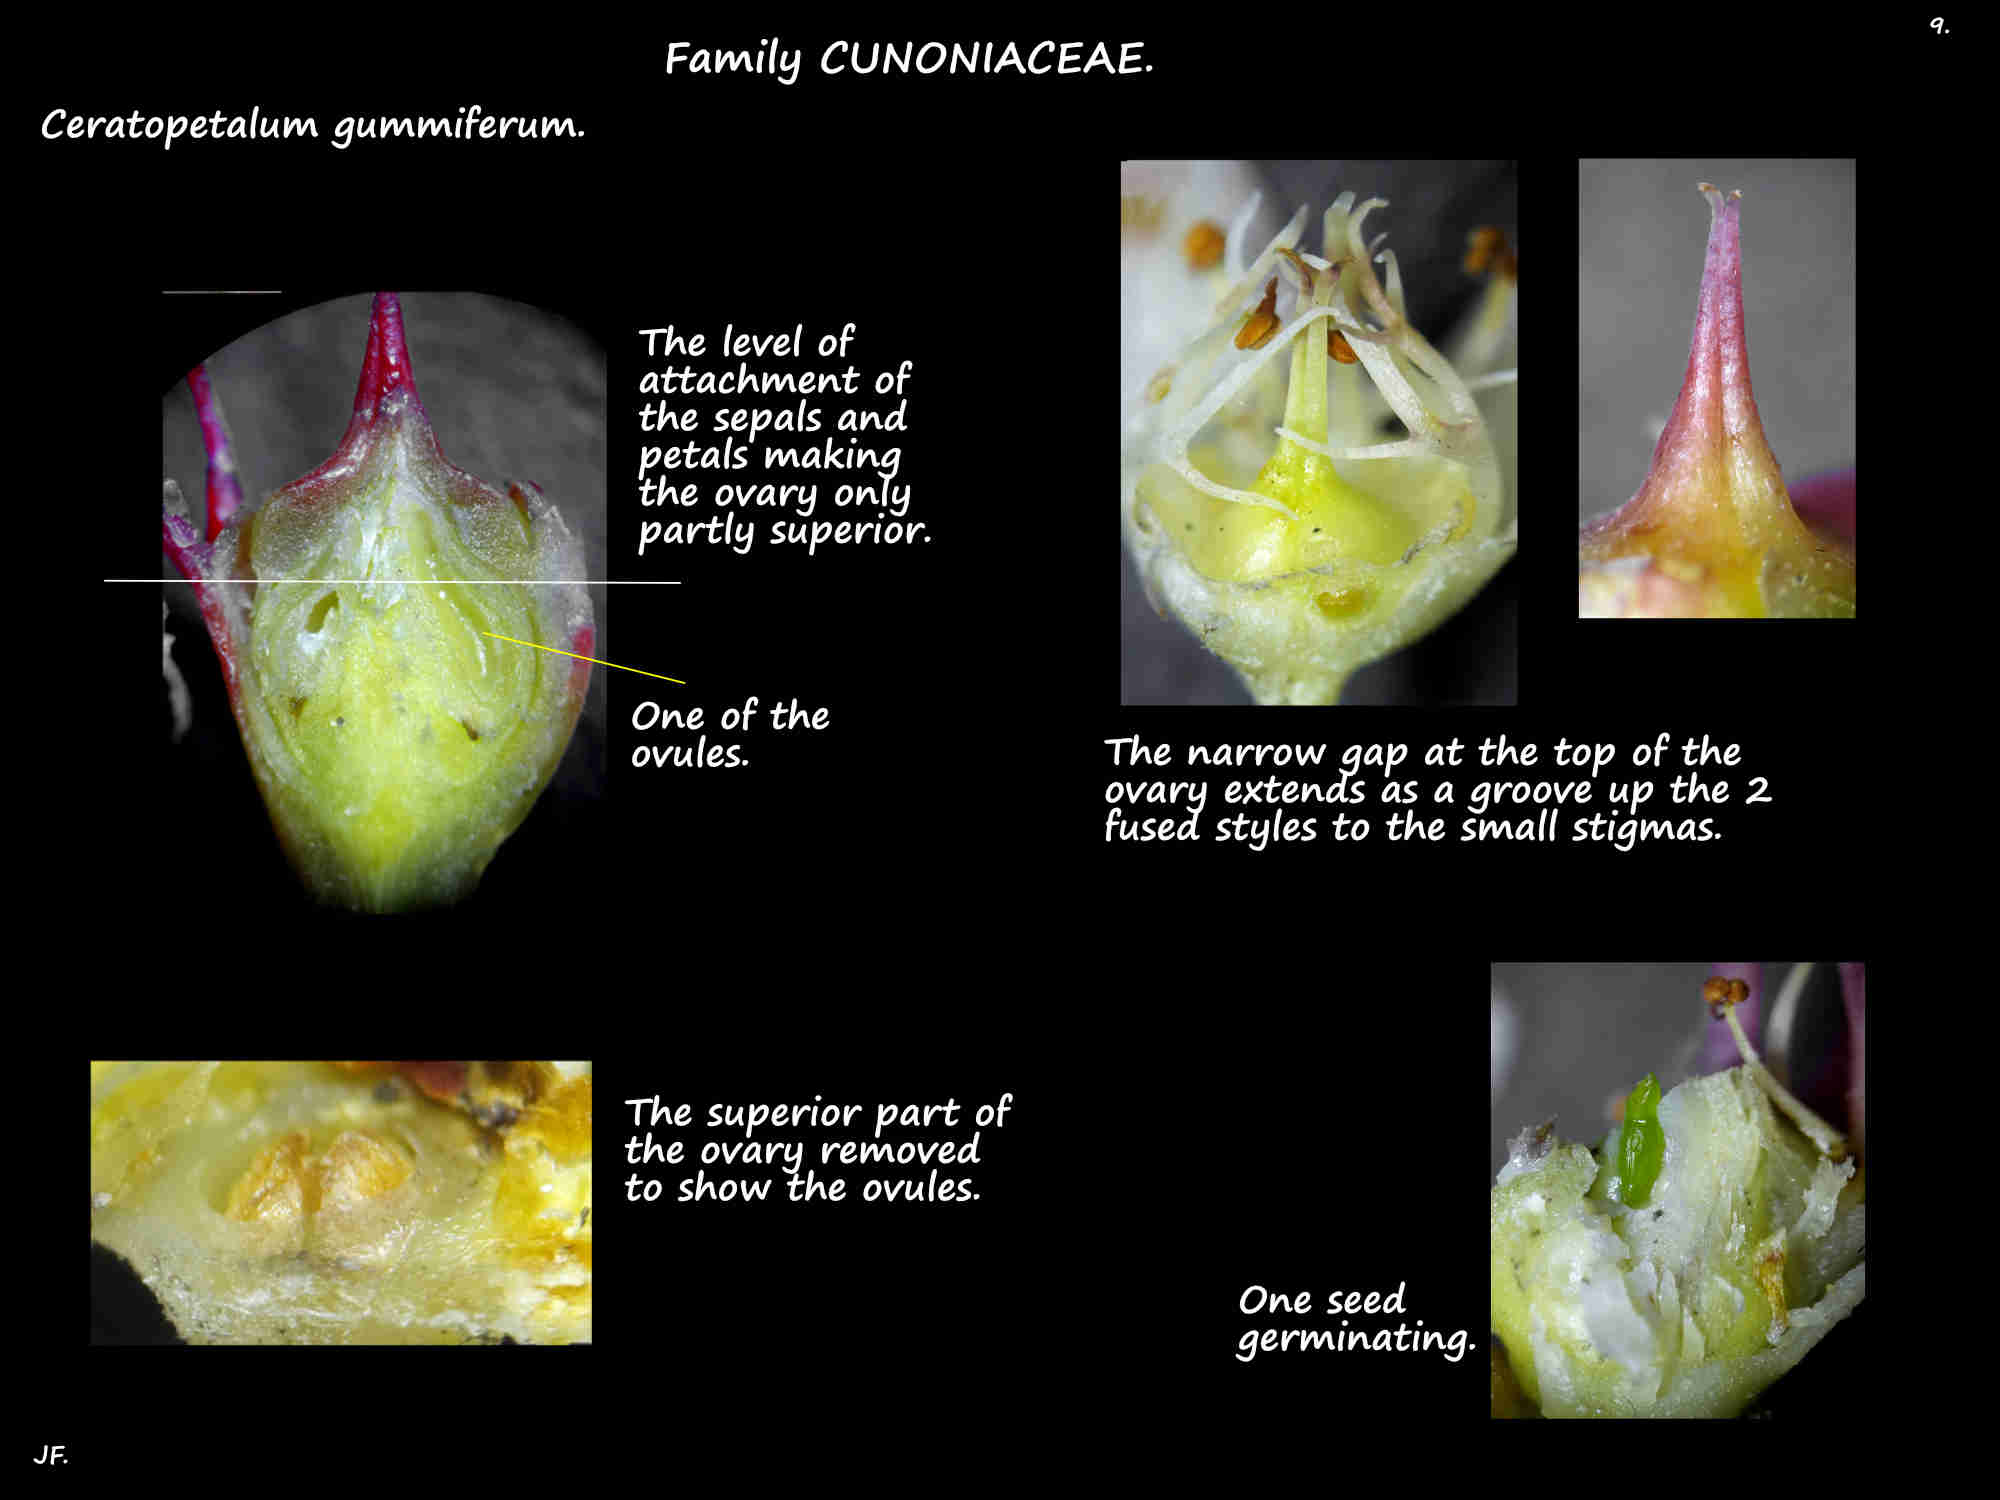 9 Ovary & styles of Ceratopetalum gummiferum